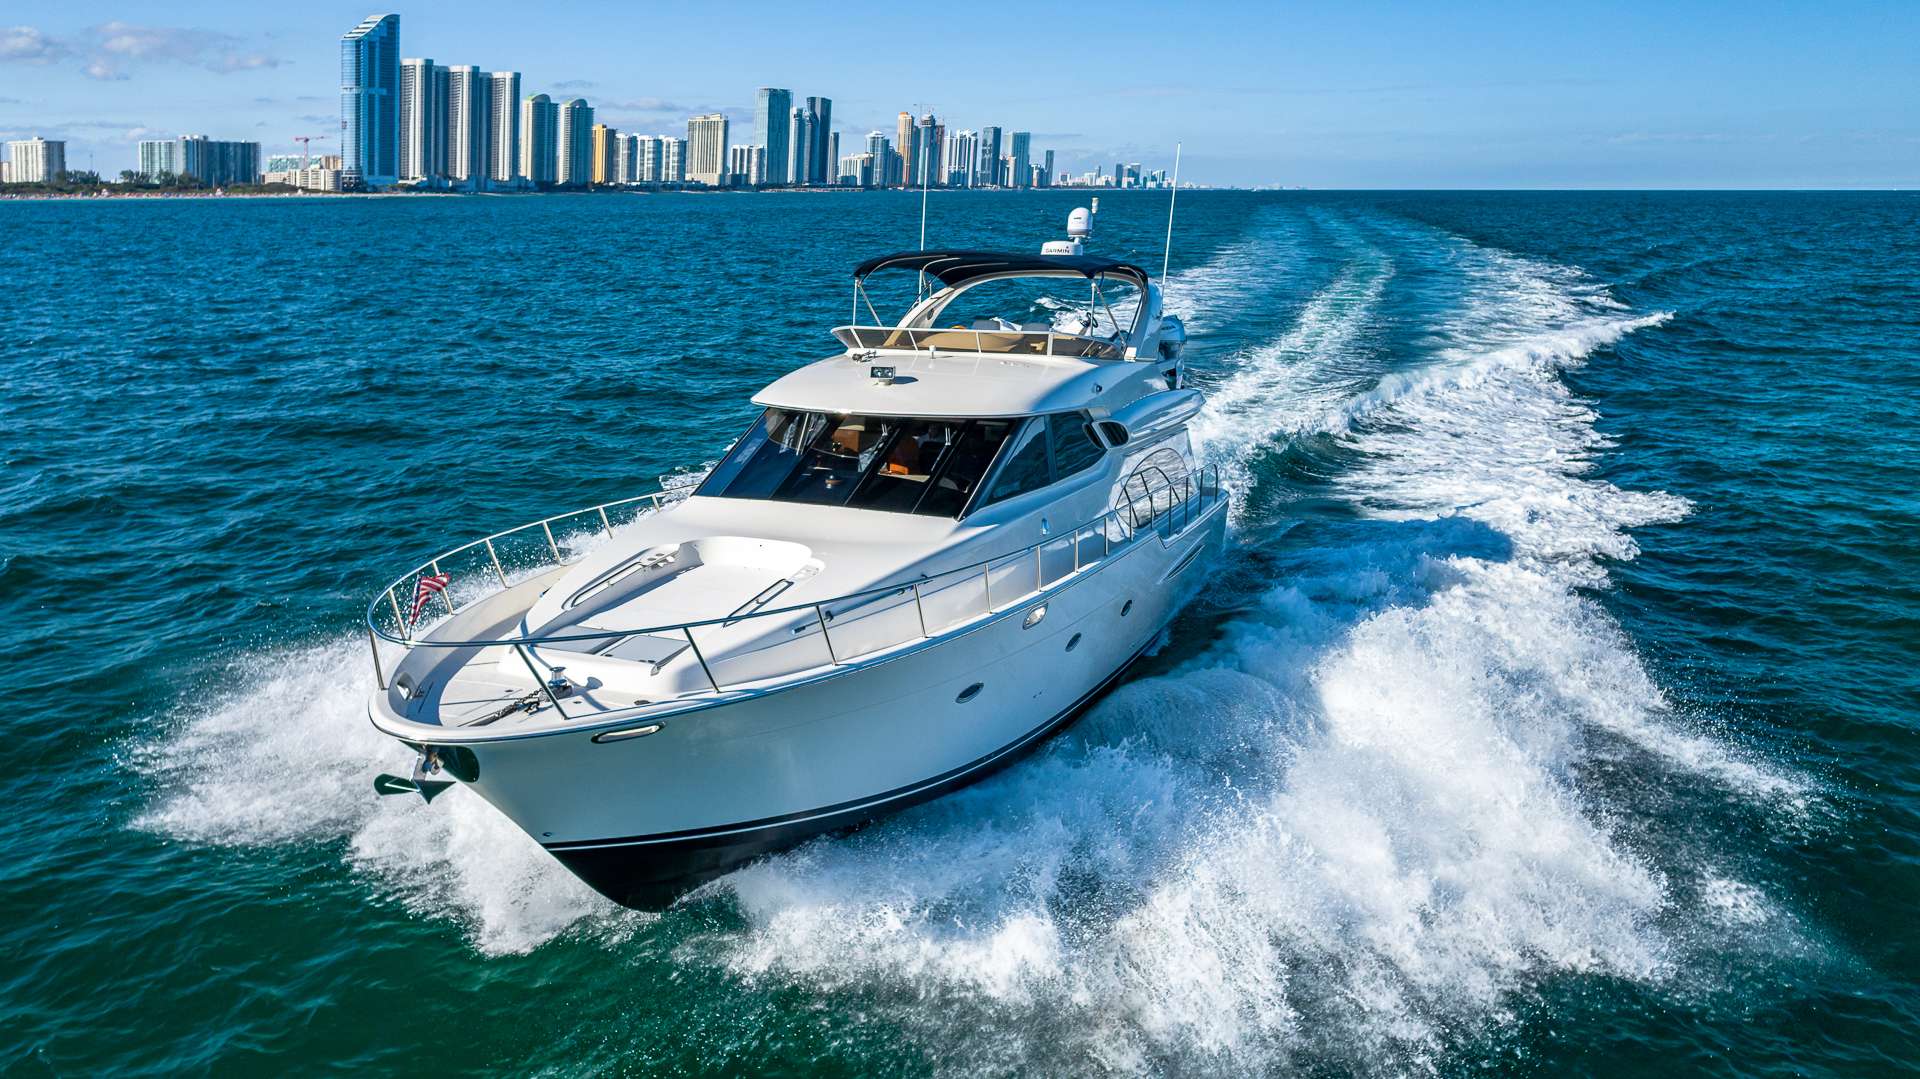 ELEGANT LADY - Luxury yacht charter Bahamas & Boat hire in Florida & Bahamas 1